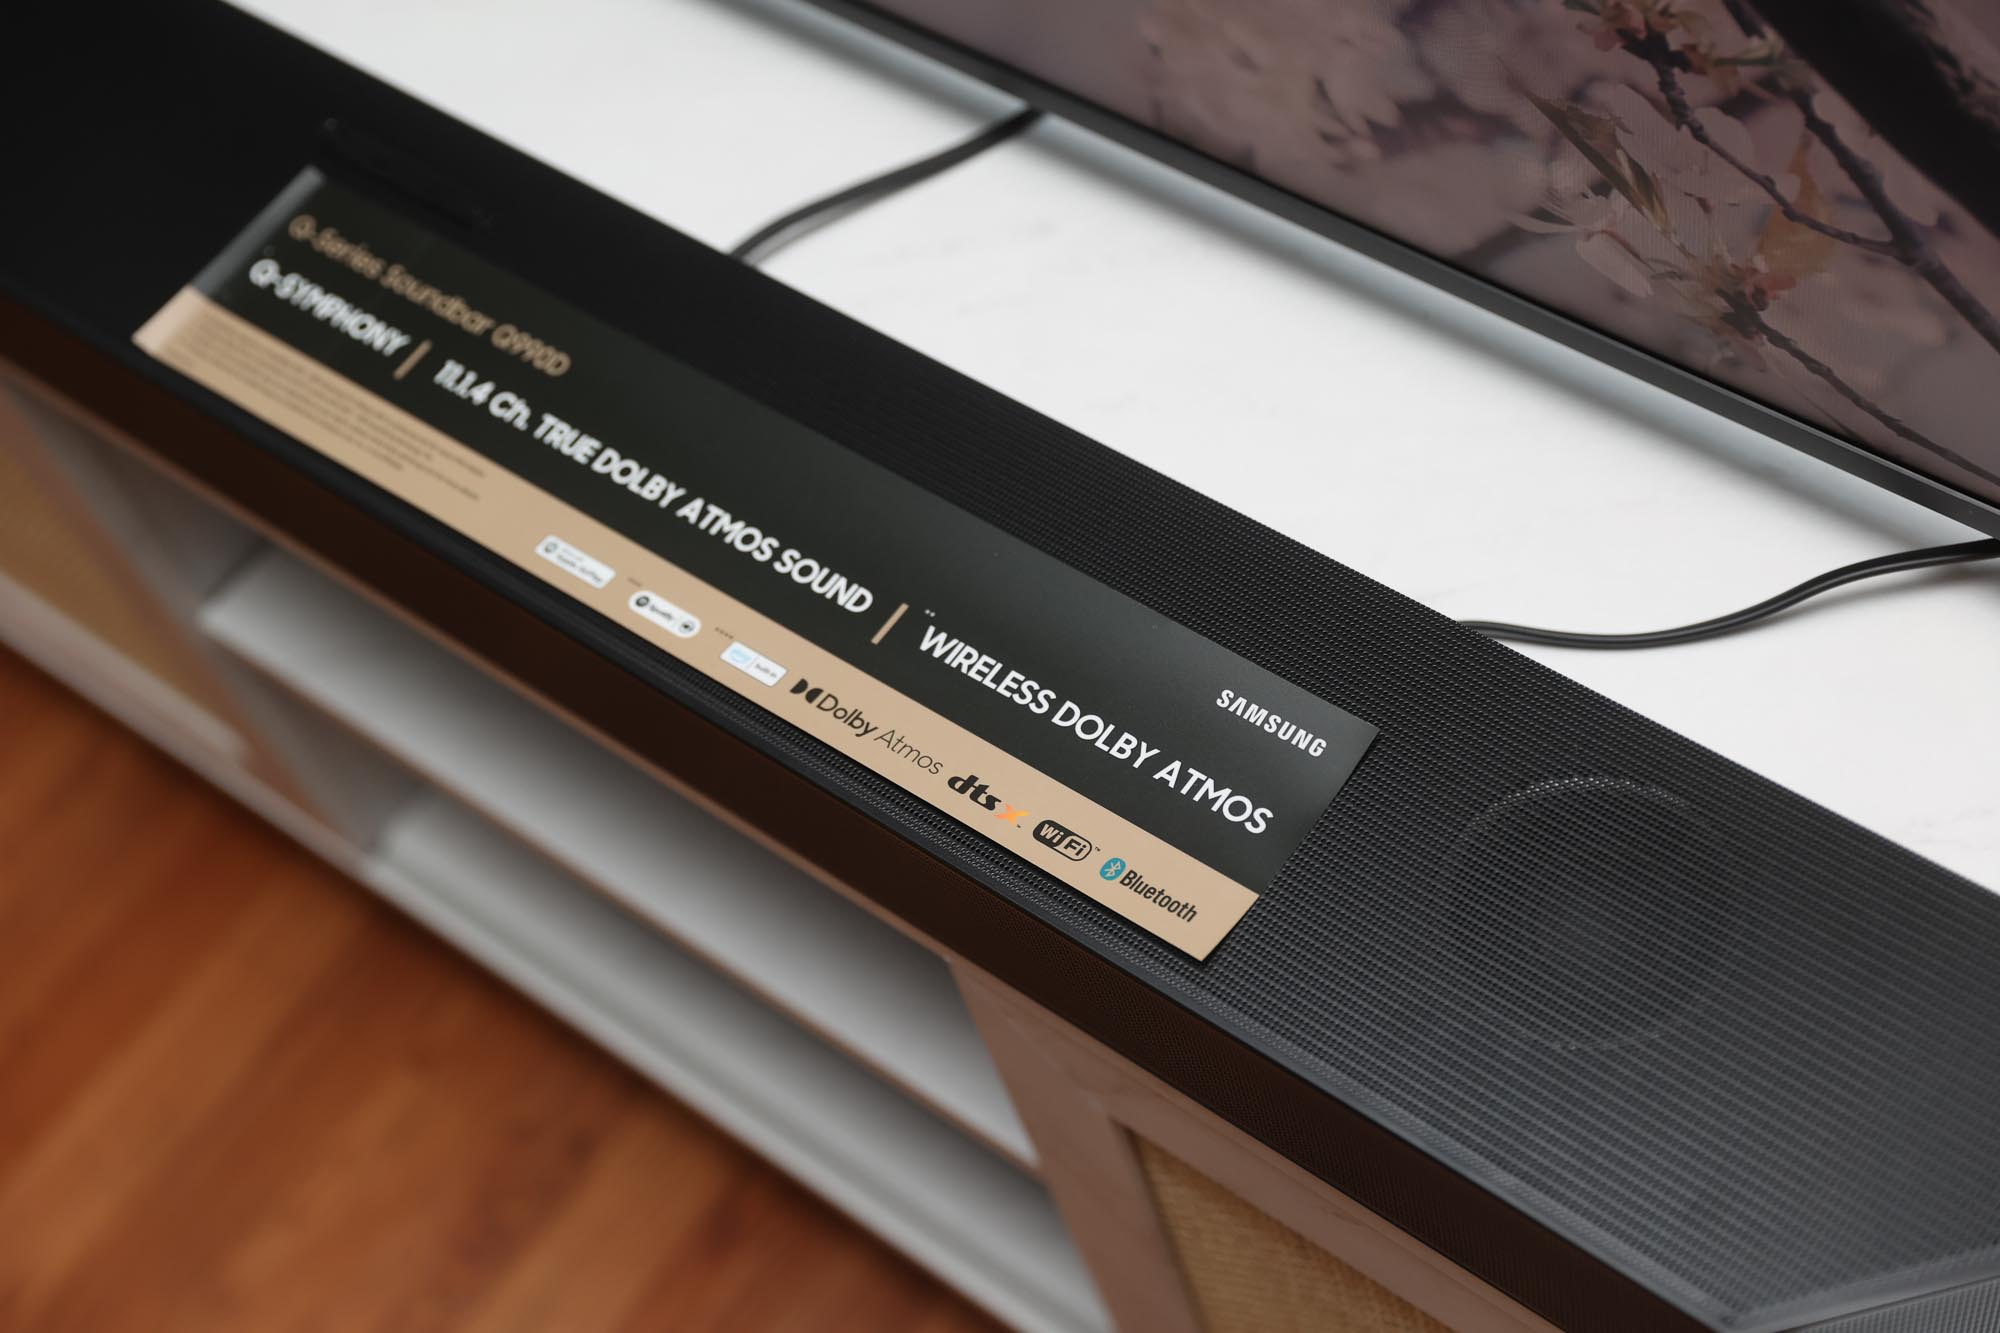 Samsung 990D soundbar in front of a TV